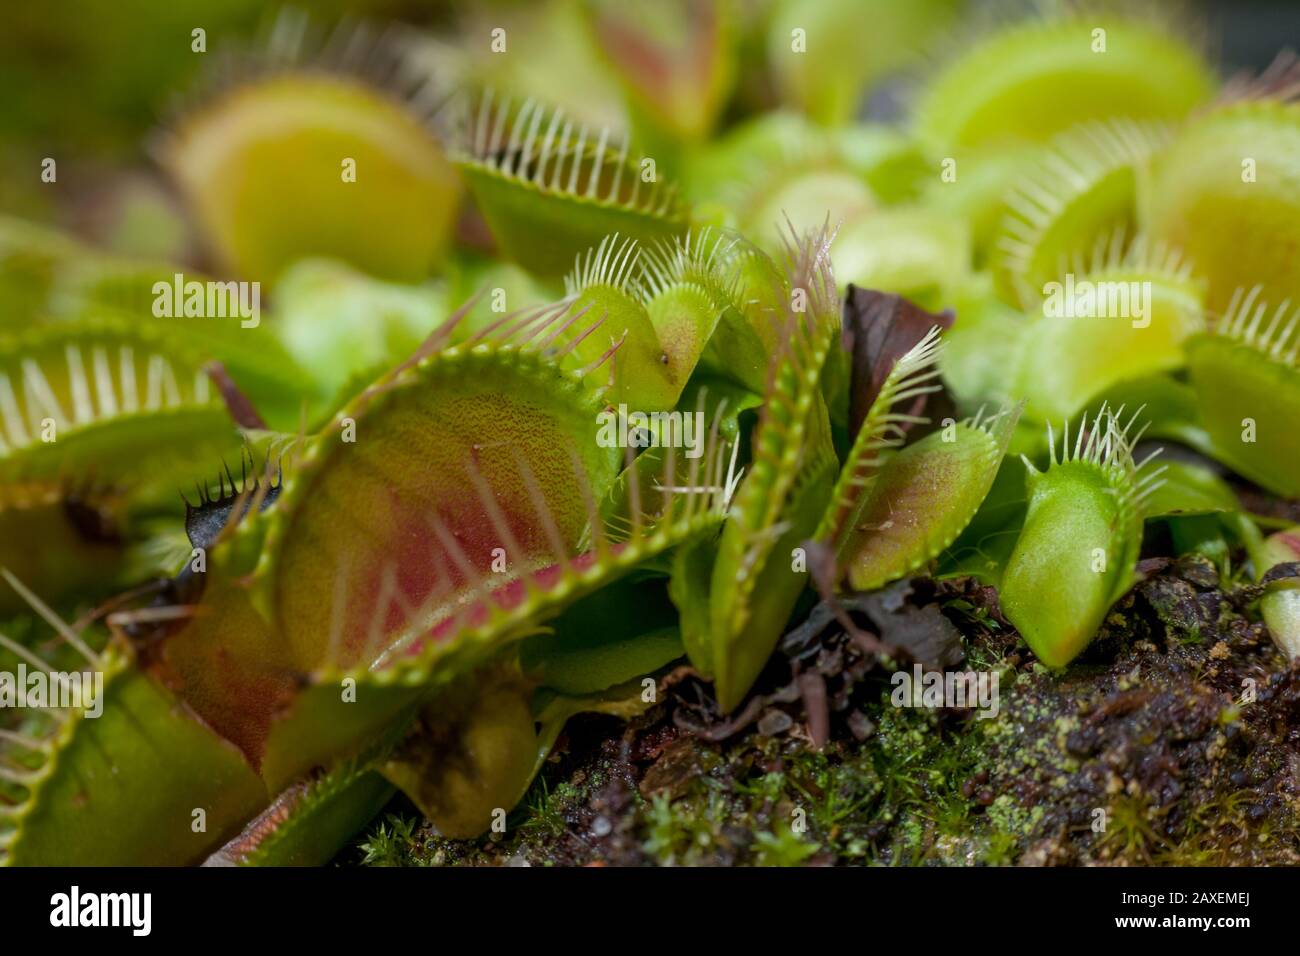 Close-up of a venus flytrap plant, details of the Dionaea traps Stock Photo